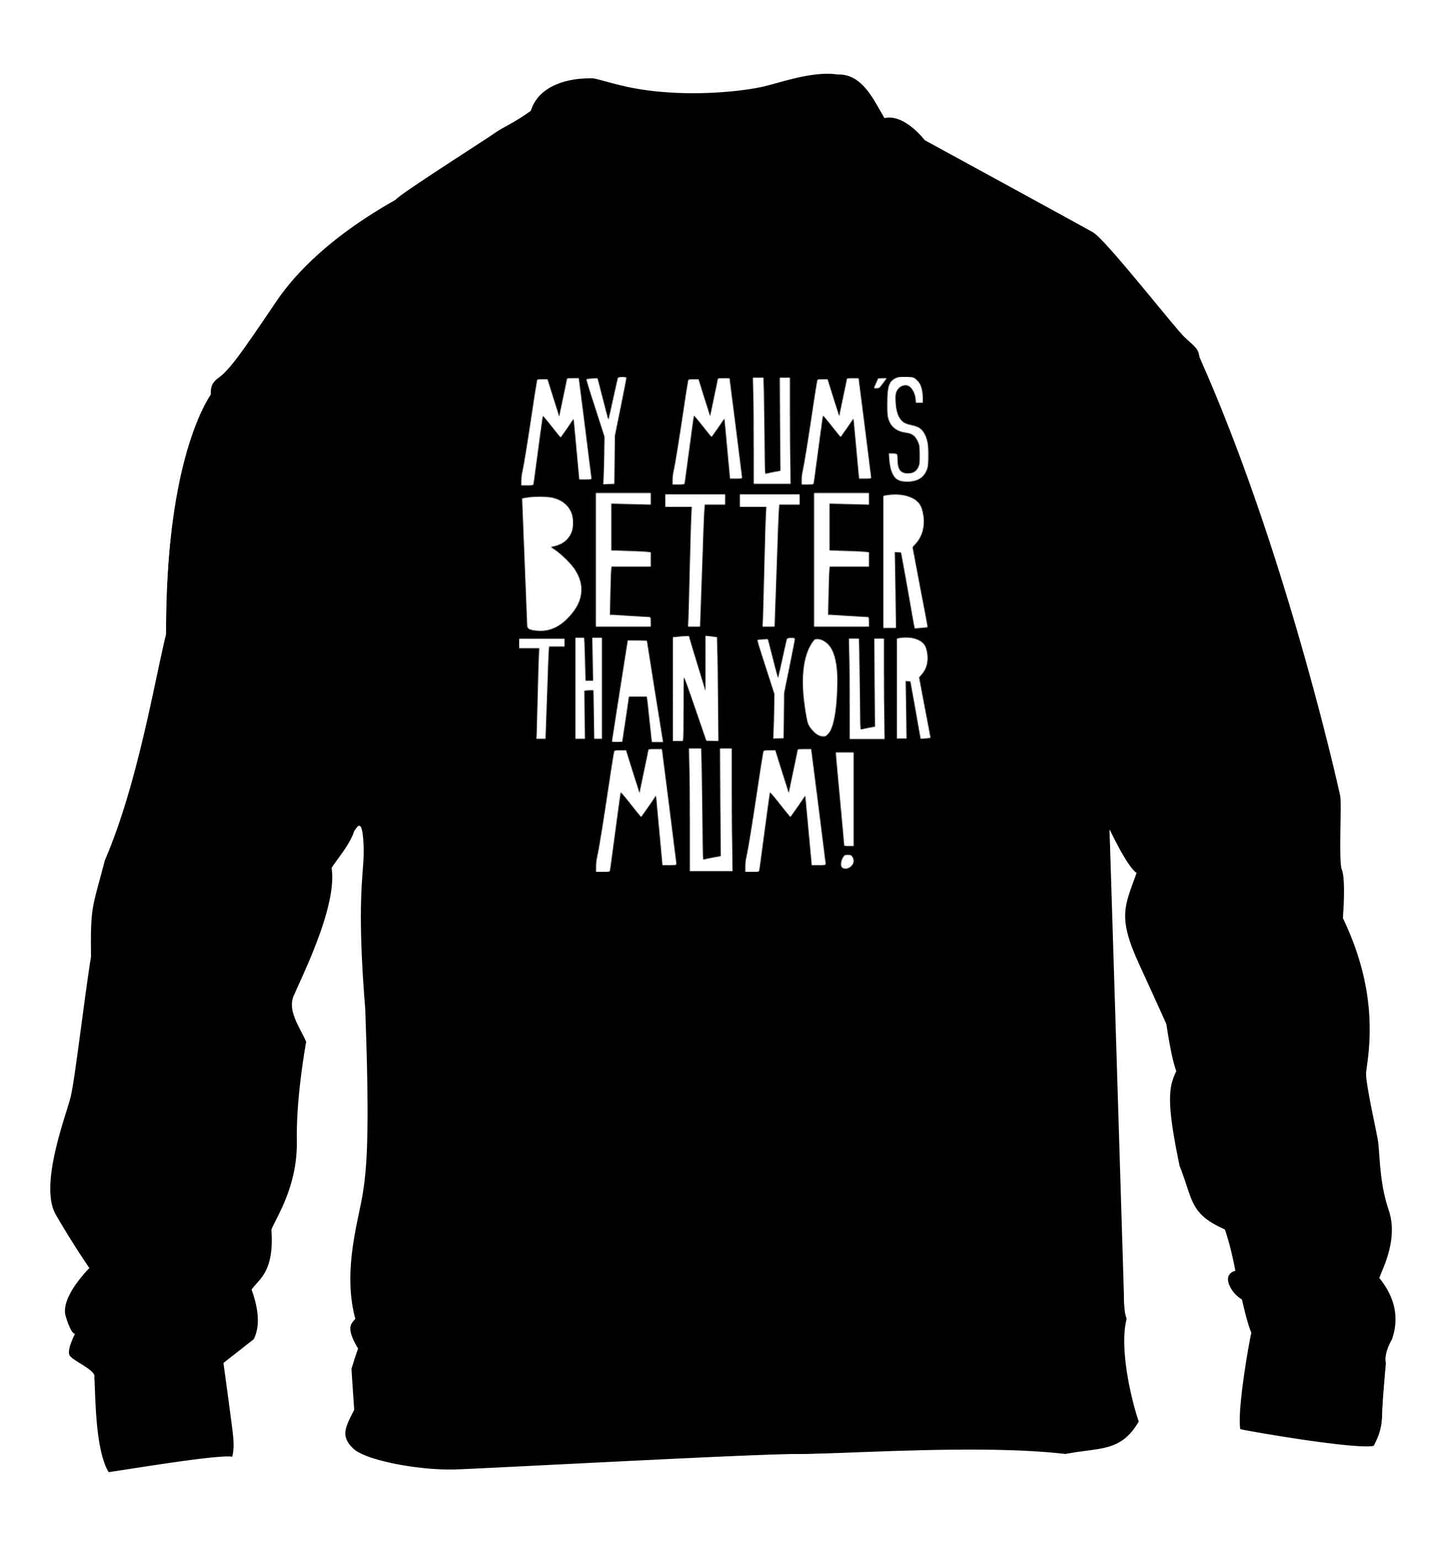 My mum's better than your mum children's black sweater 12-13 Years